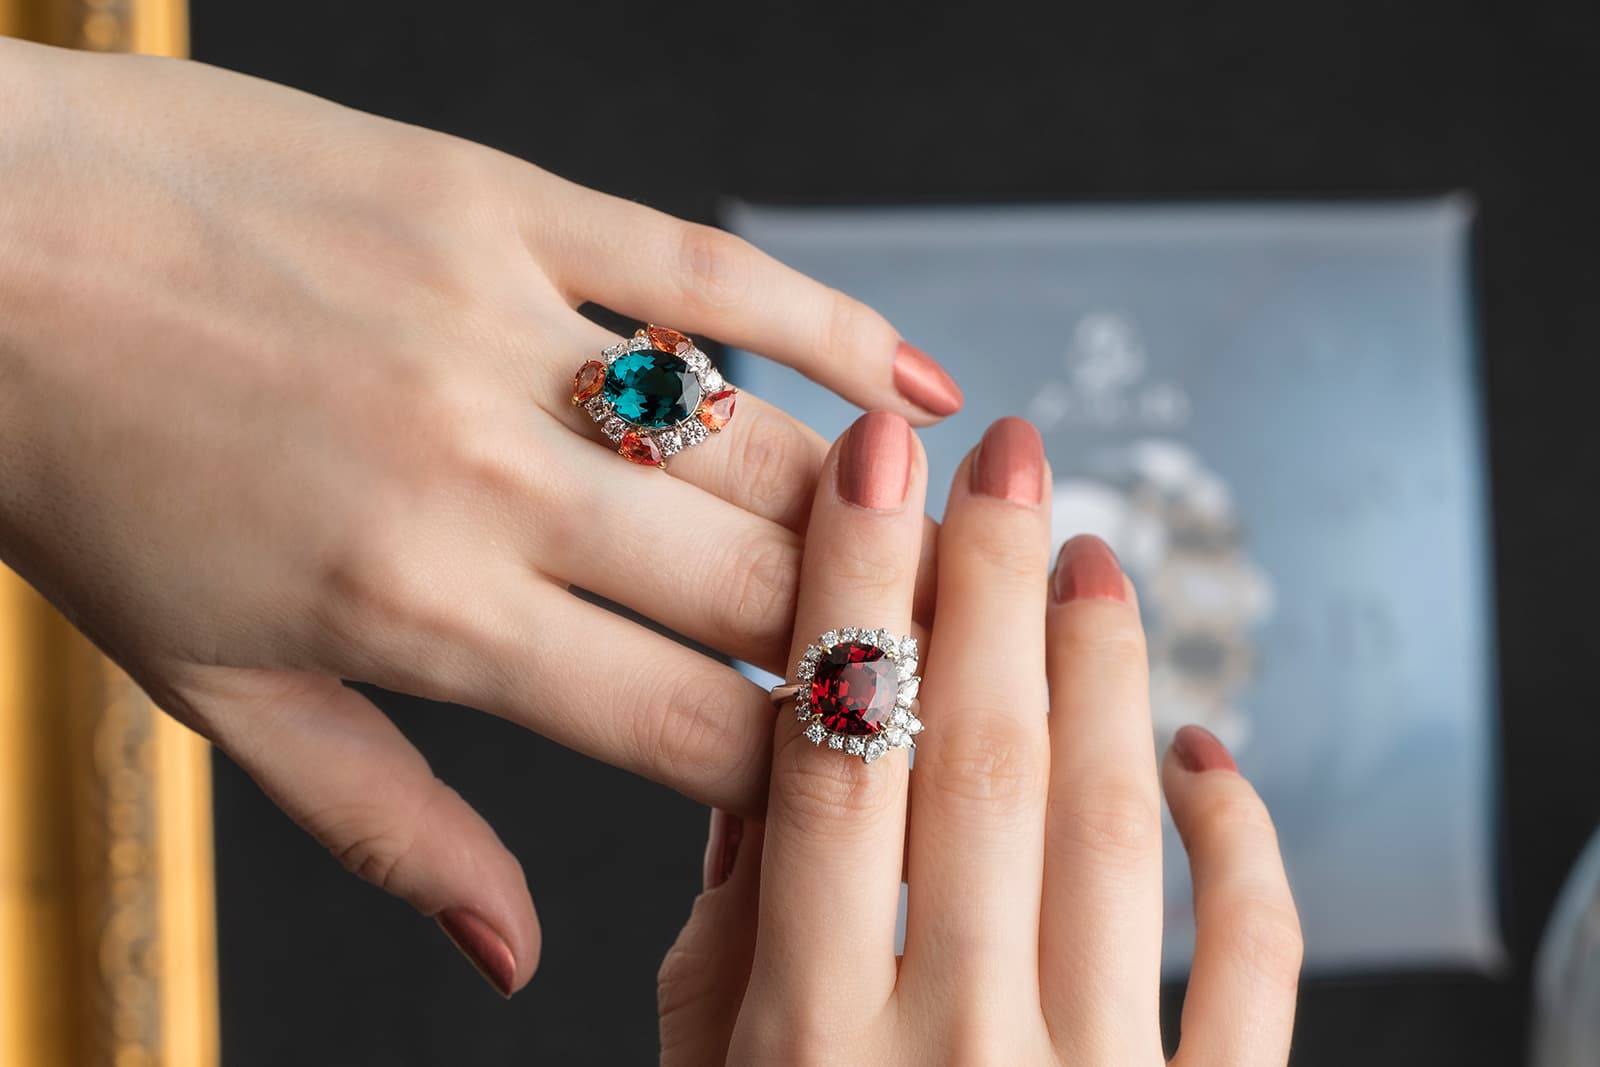 Слева: кольцо с синим турмалином, сапфирами падпараджа и бриллиантами, справа: кольцо с гранатом и бриллиантами, оба от Джесси Фу